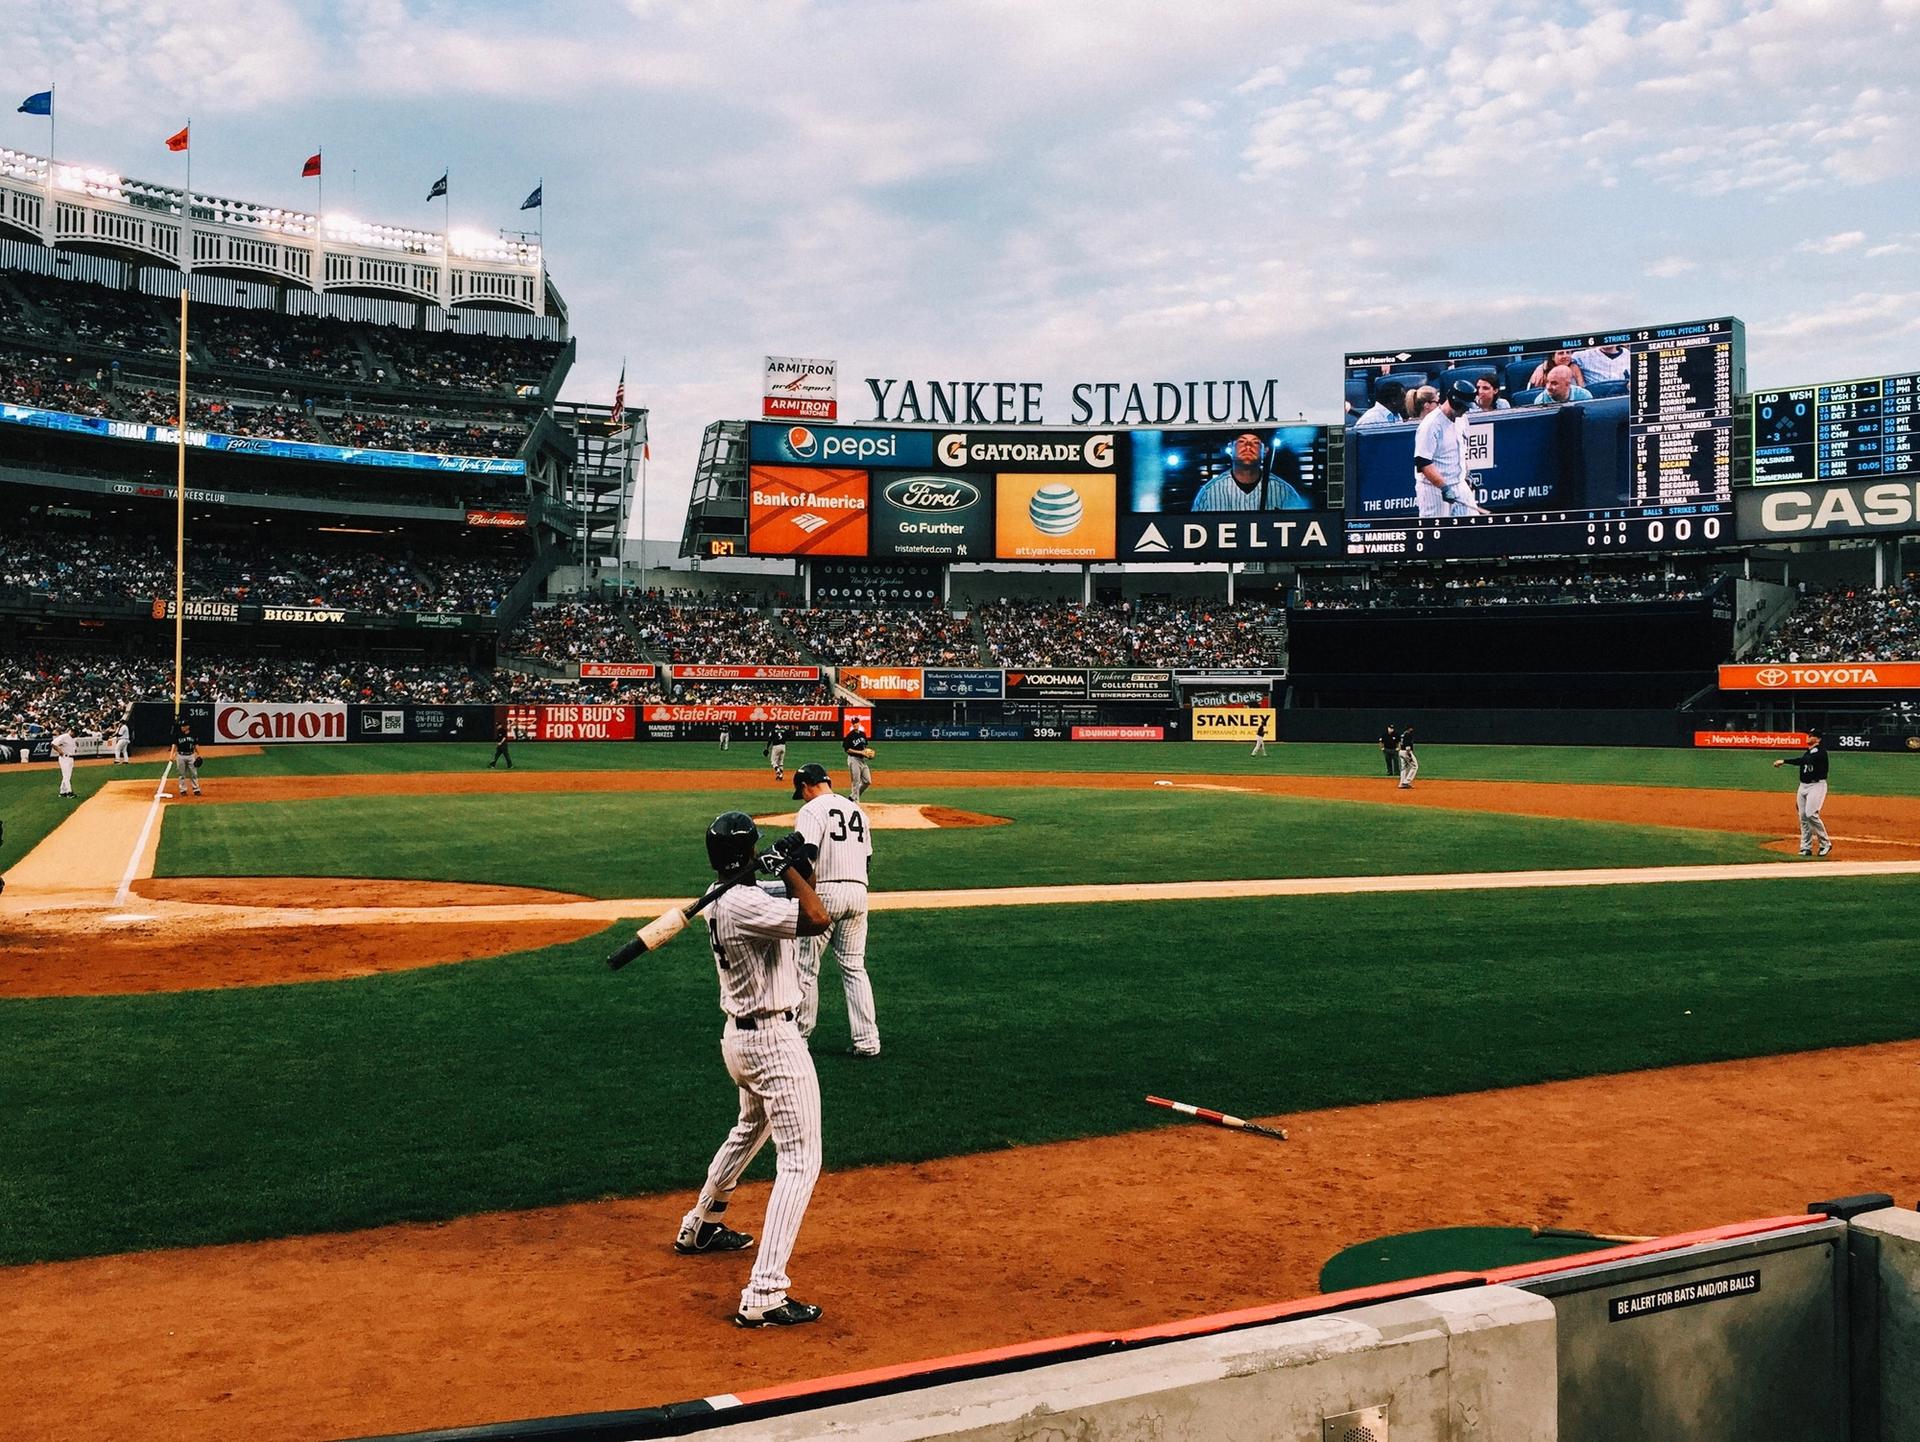 Baseball players warming up at Yankee Stadium